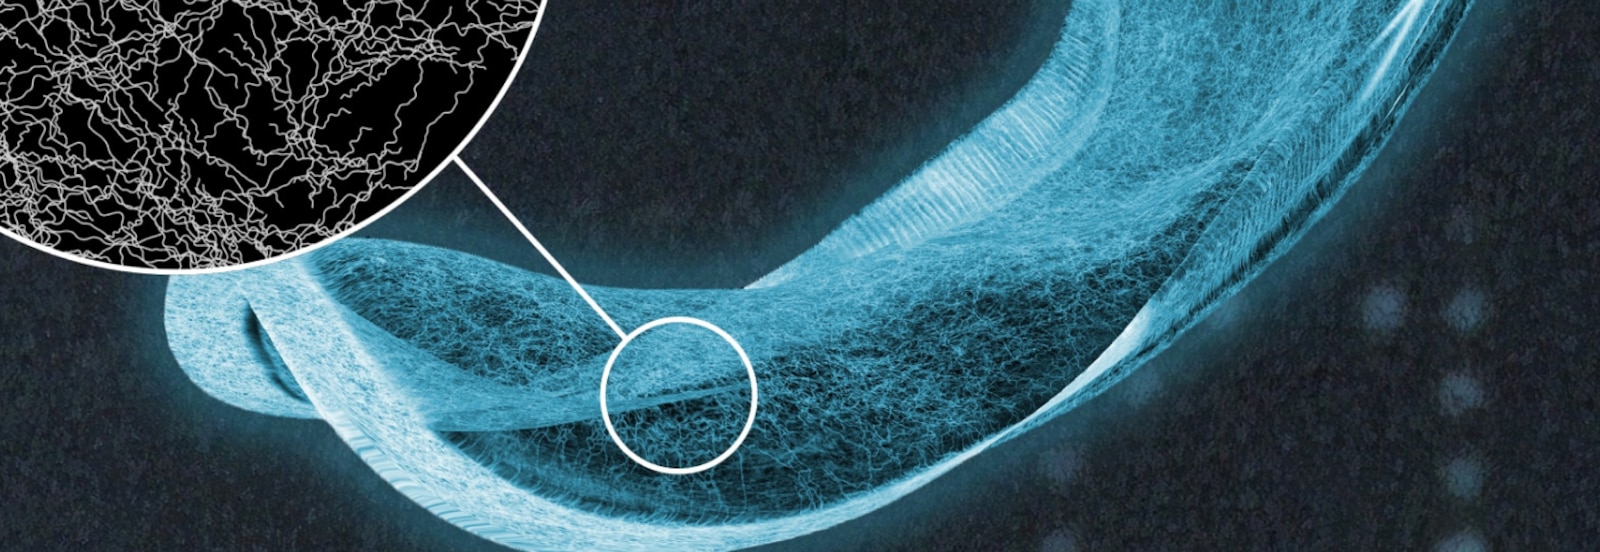 En röntgenbild av en absorberande binda från TENA visar fibrerna i den absorberande kärnan i detalj 